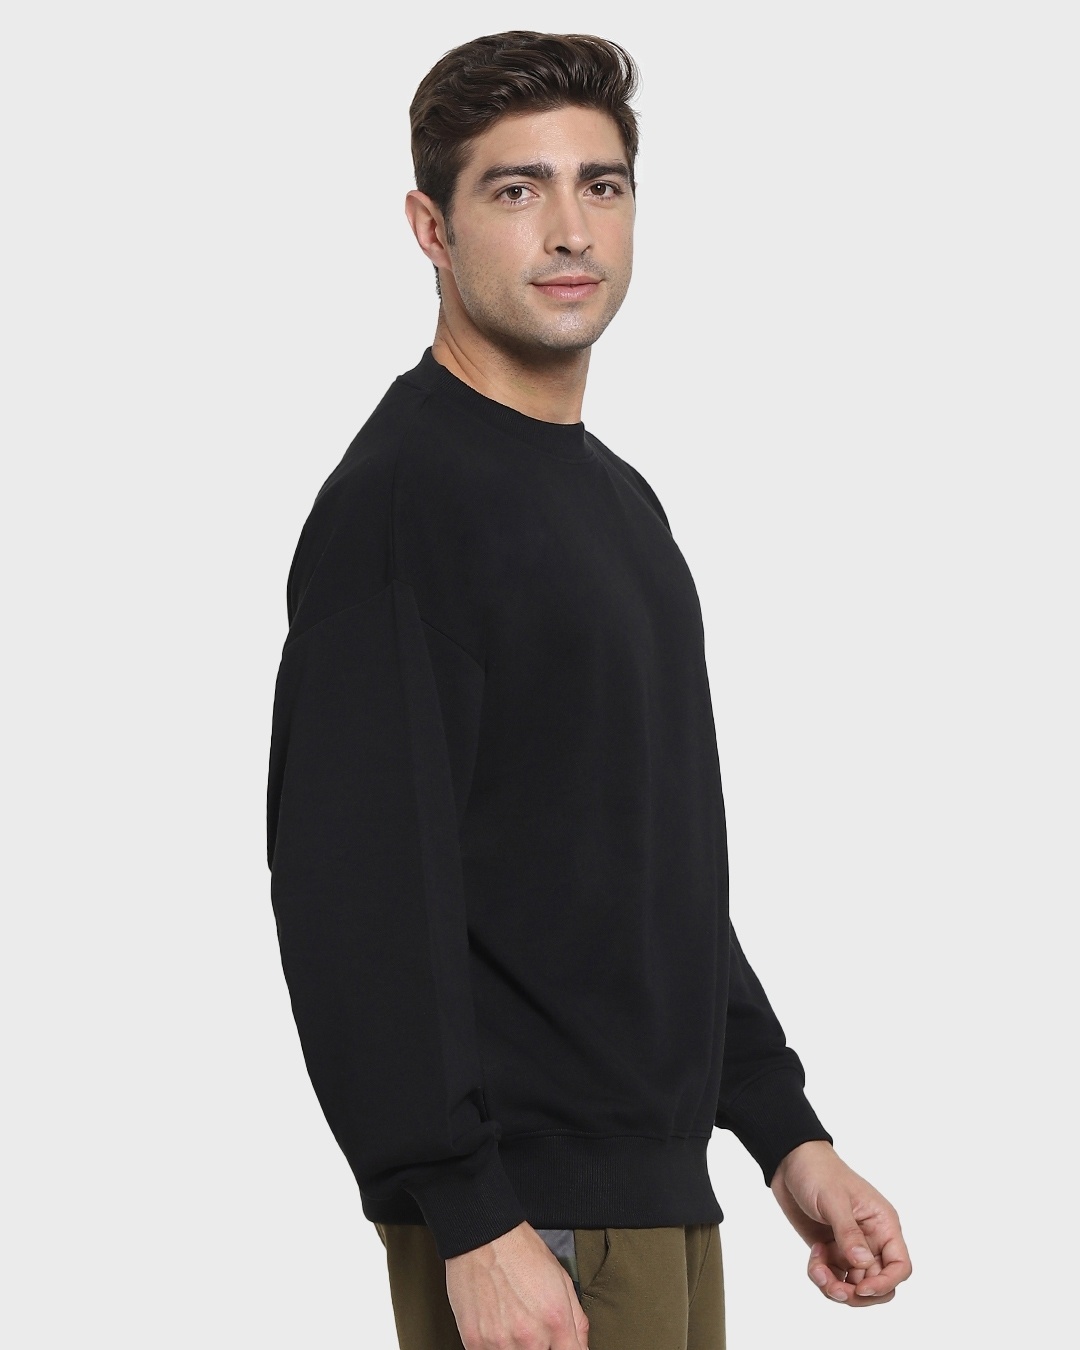 Buy Men's Black Oversized Sweatshirt Online at Bewakoof